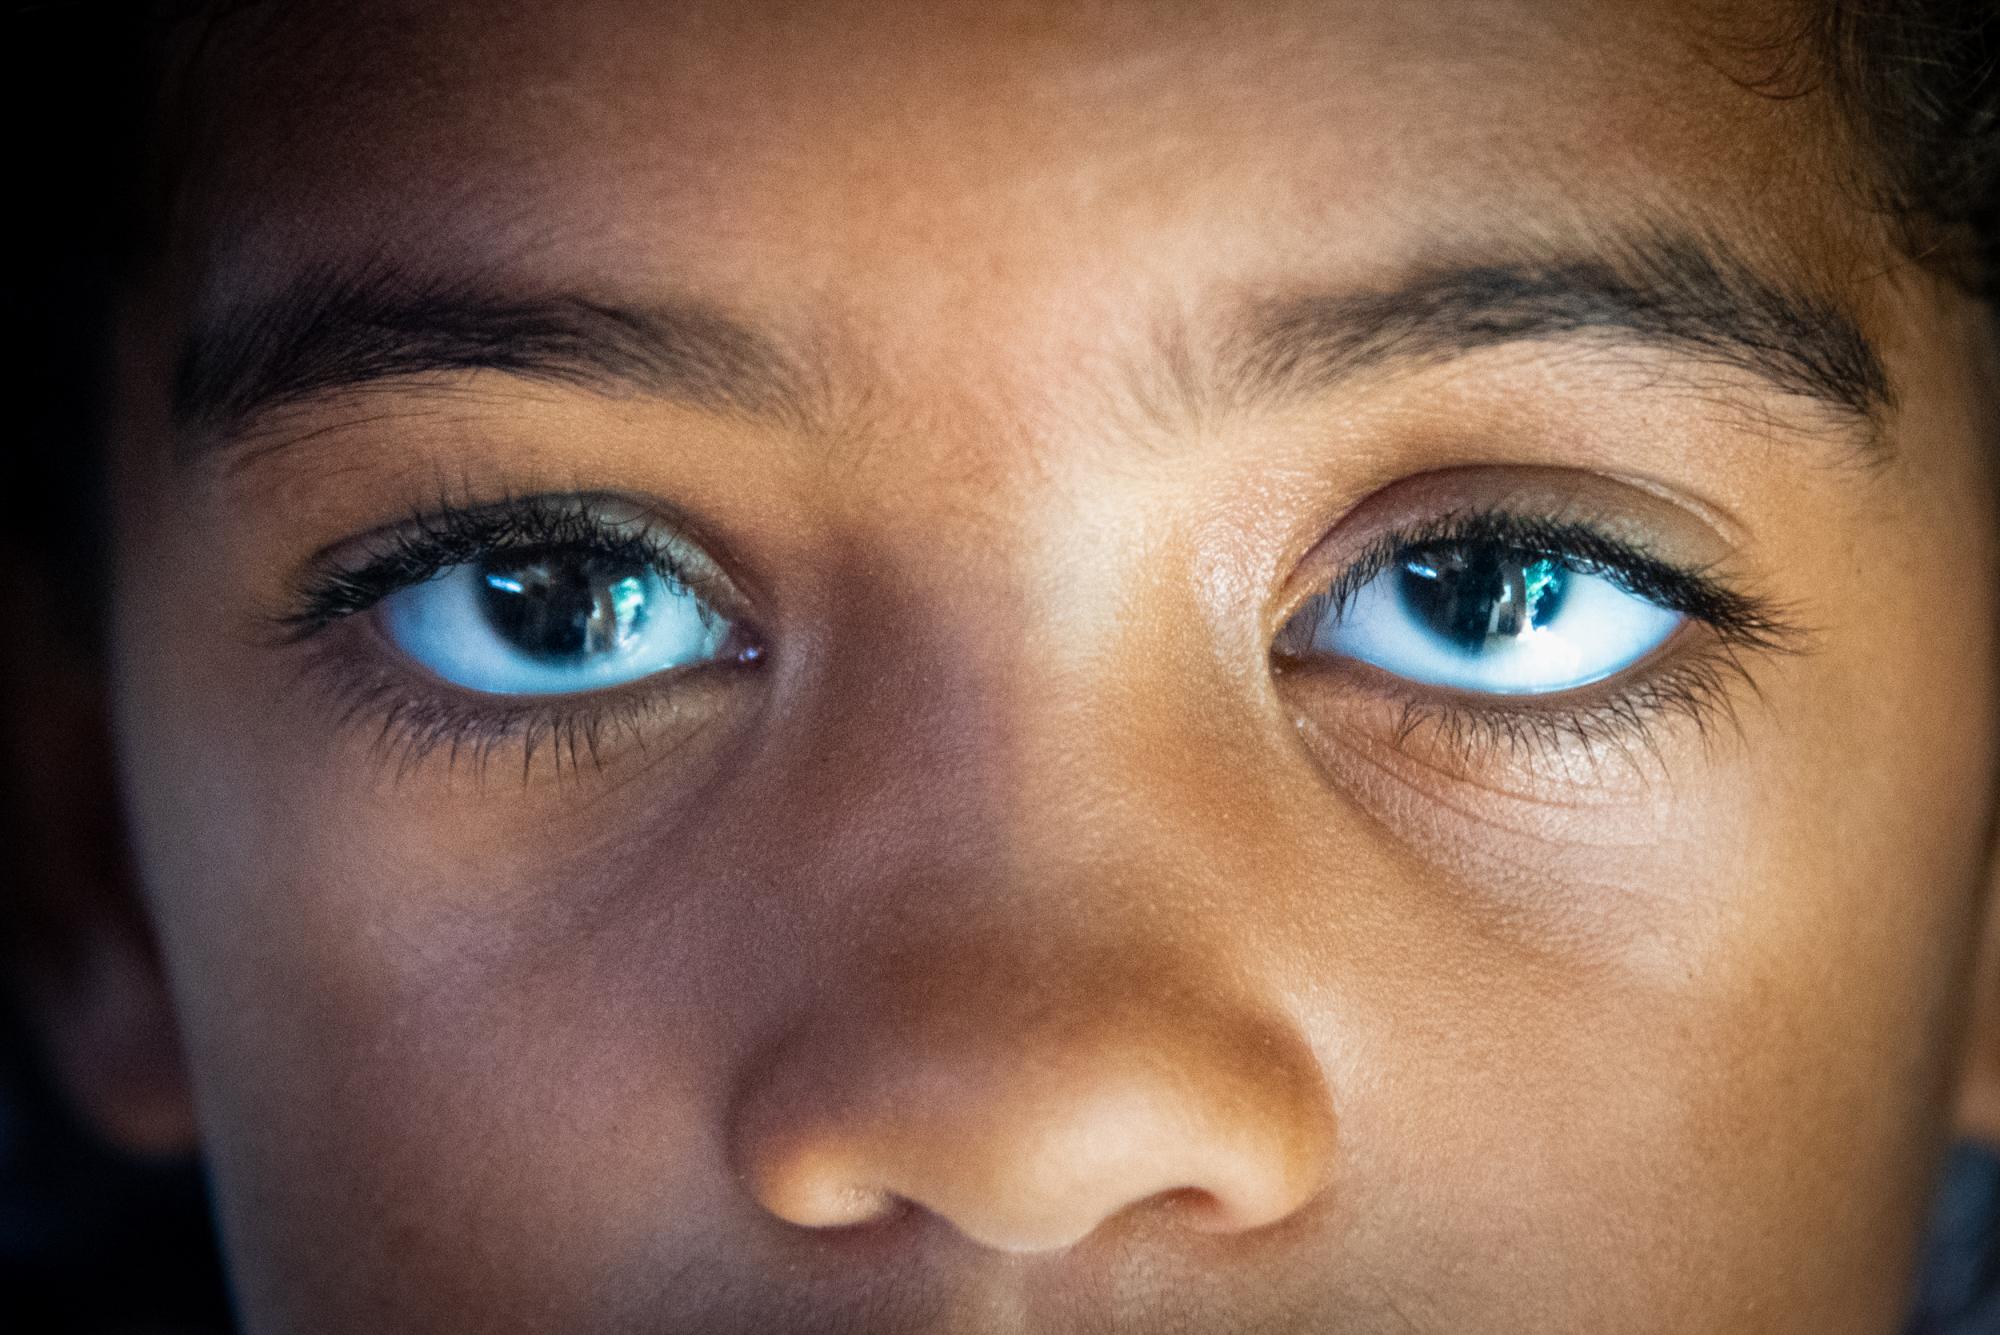 Con tan solo siete años de edad, el glaucoma afecta la visión de una niña que precisa una operación. (Juan Miguel Peña / Diario Libre)